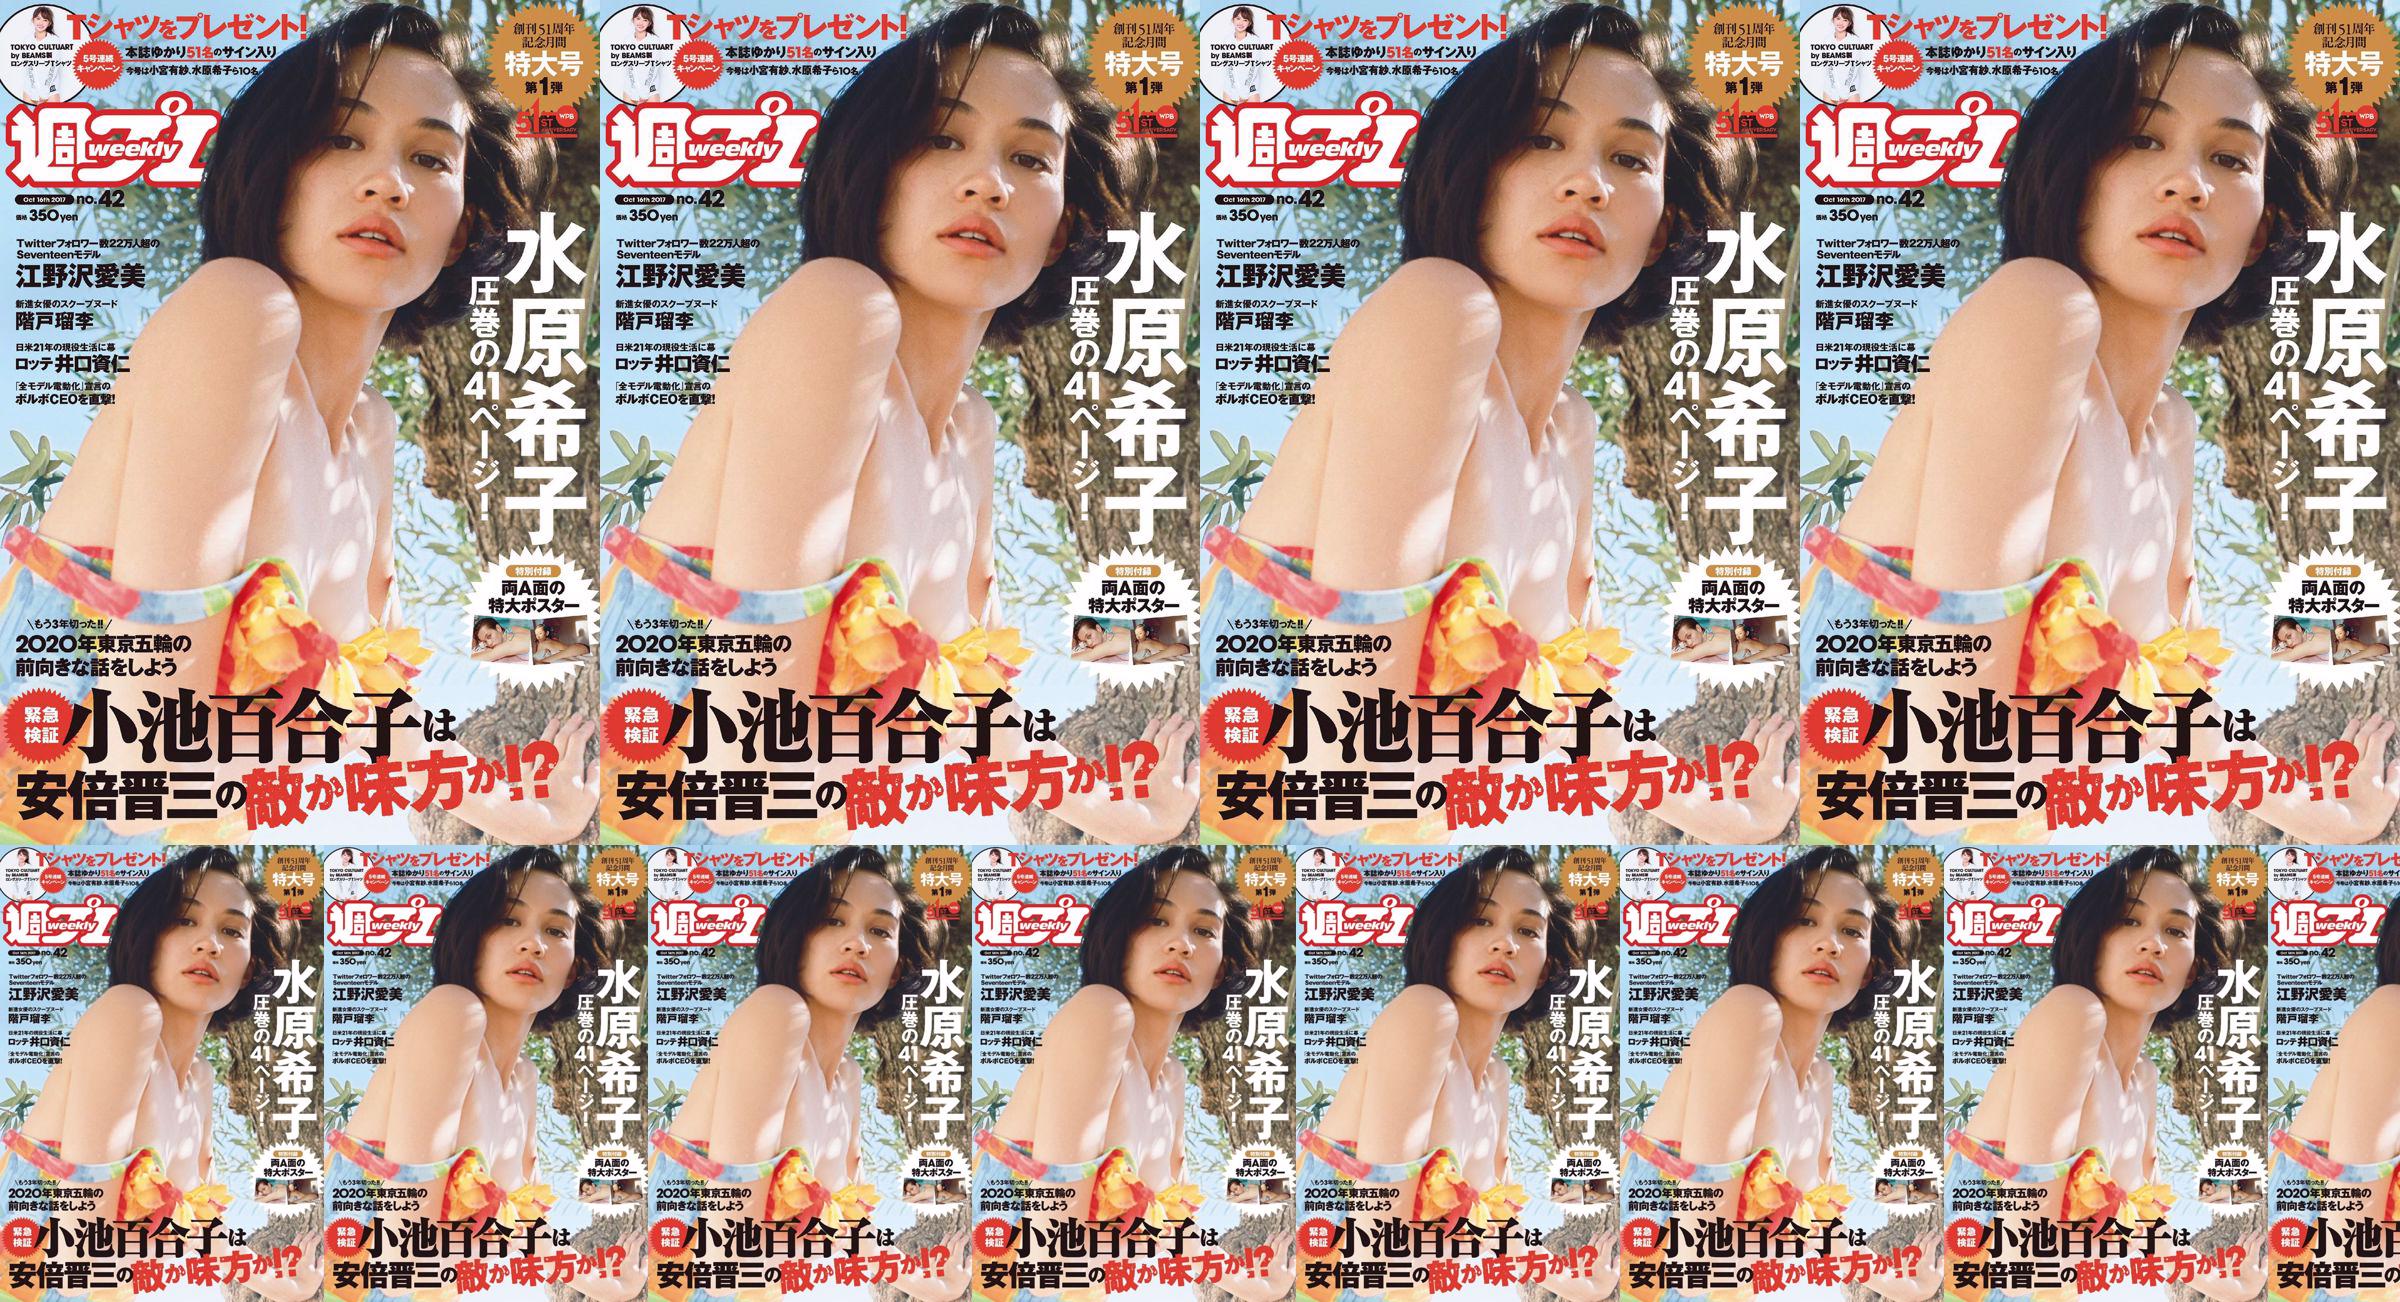 Kiko Mizuhara Manami Enosawa Serina Fukui Miu Nakamura Ruri Shinato [Weekly Playboy] 2017 No.42 Photo Magazine No.132f8e Page 18